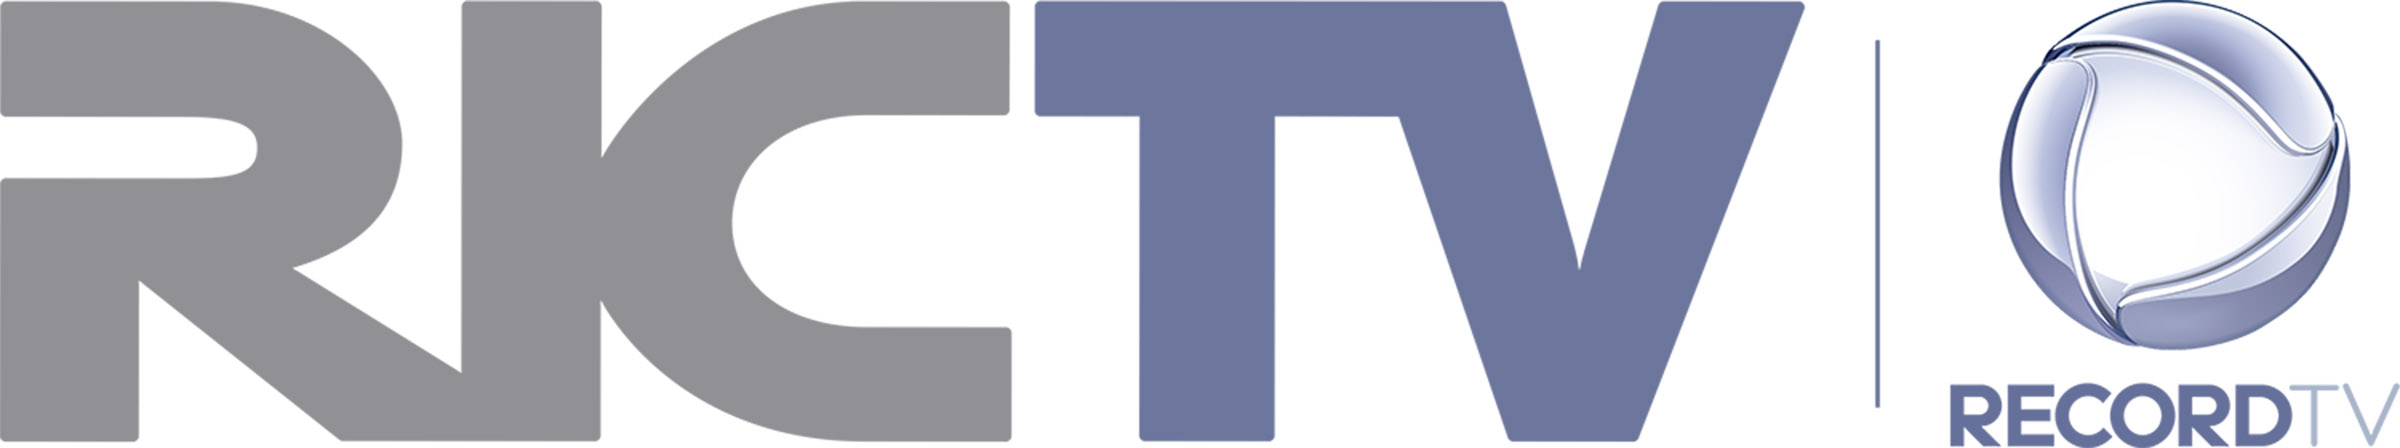 RICTV Record TV Paraná é a emissora que mais cresceu no estado em 2016